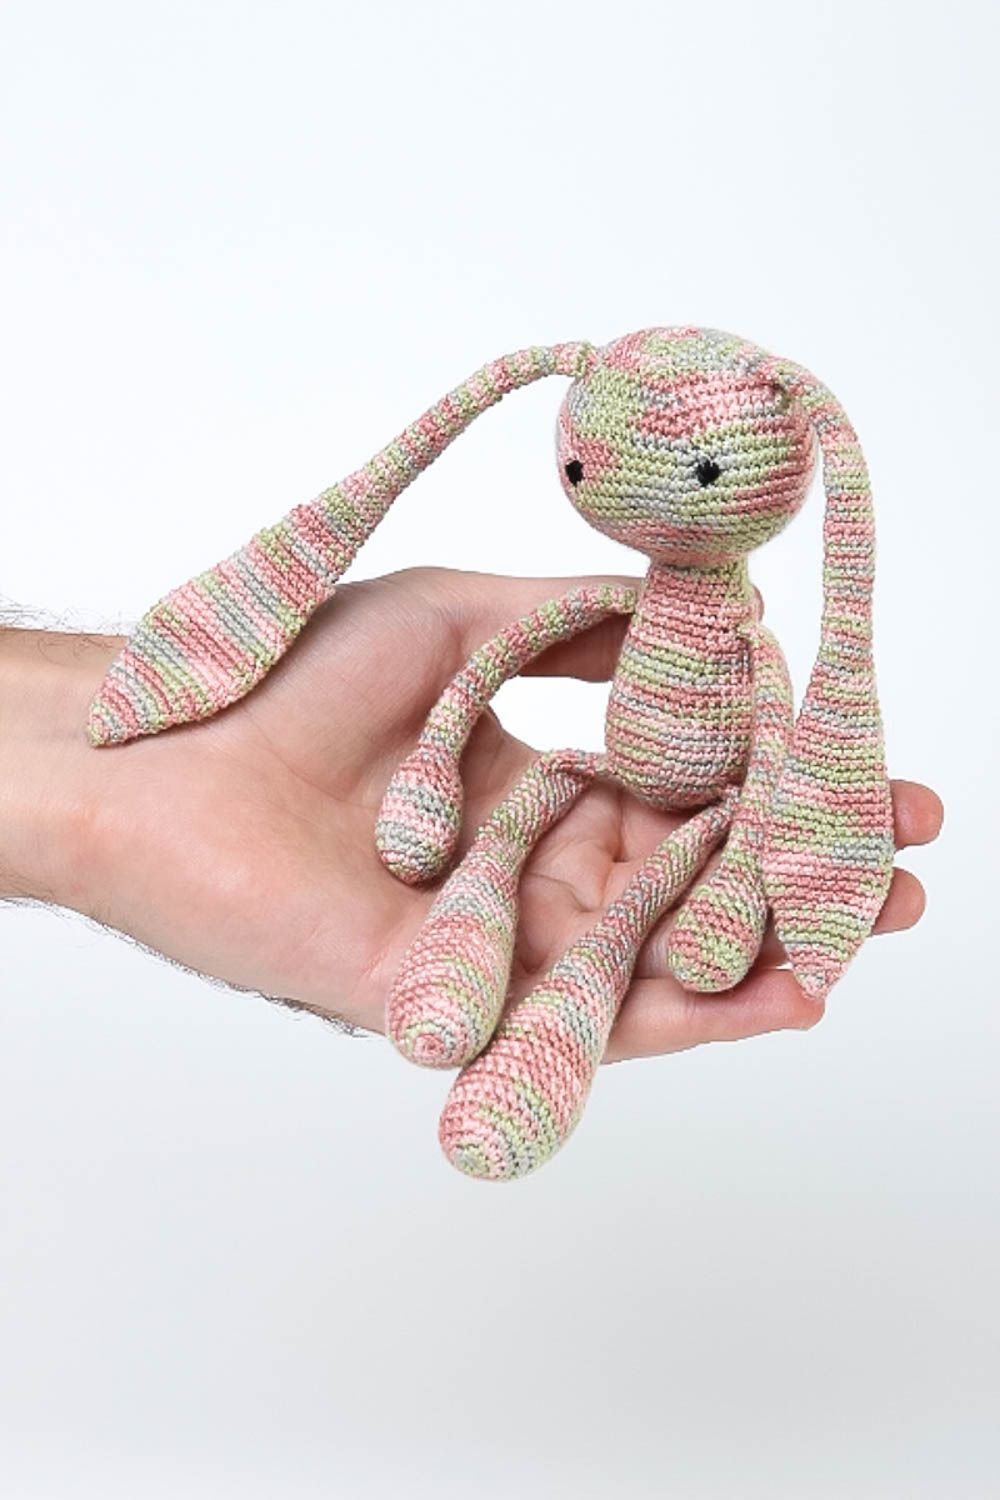 Мягкая игрушка ручной работы игрушка для девочек розовая детская игрушка заяц фото 5